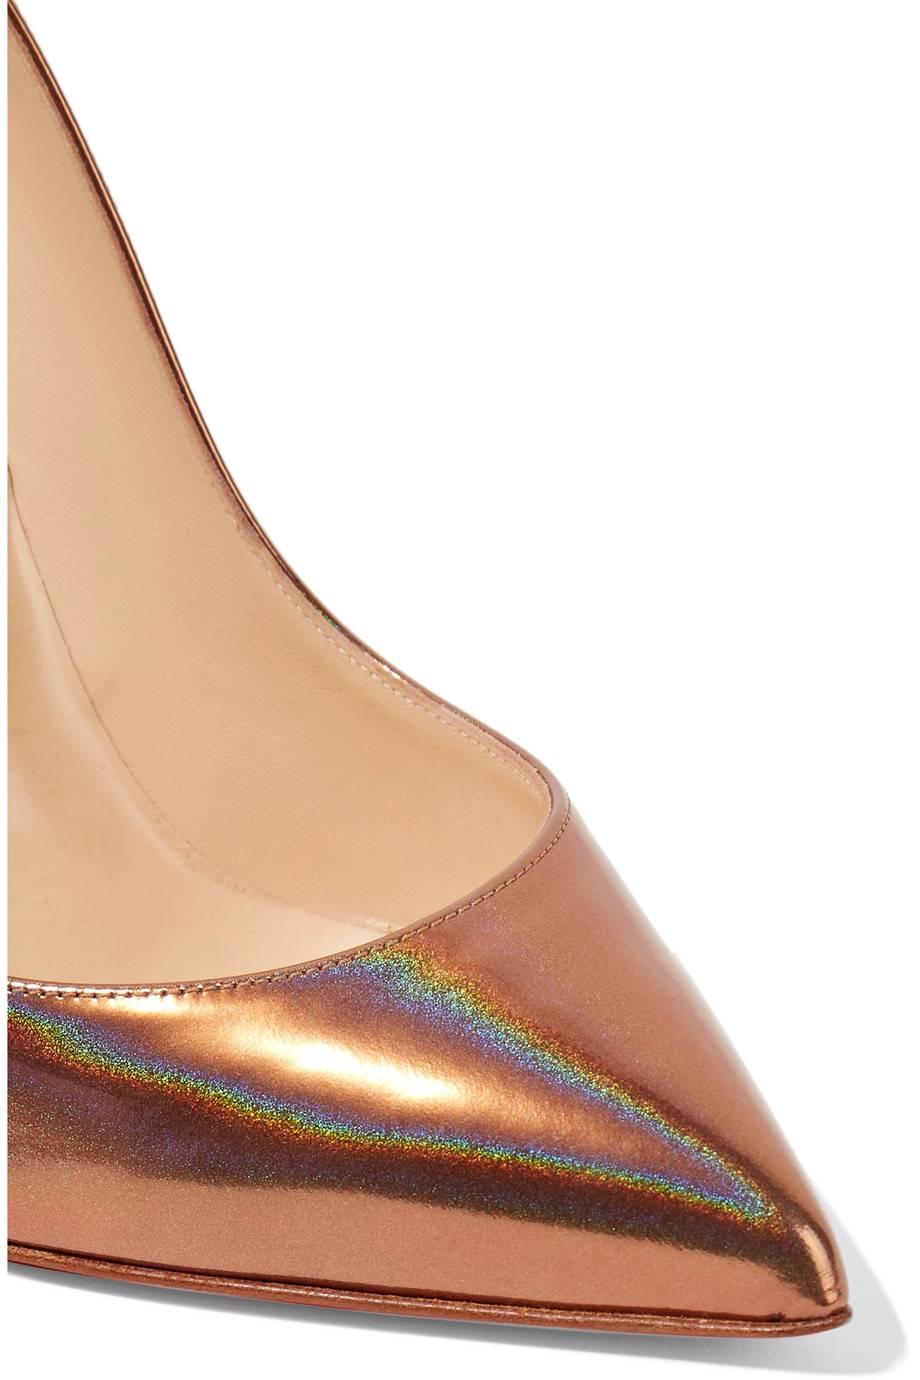 copper heels